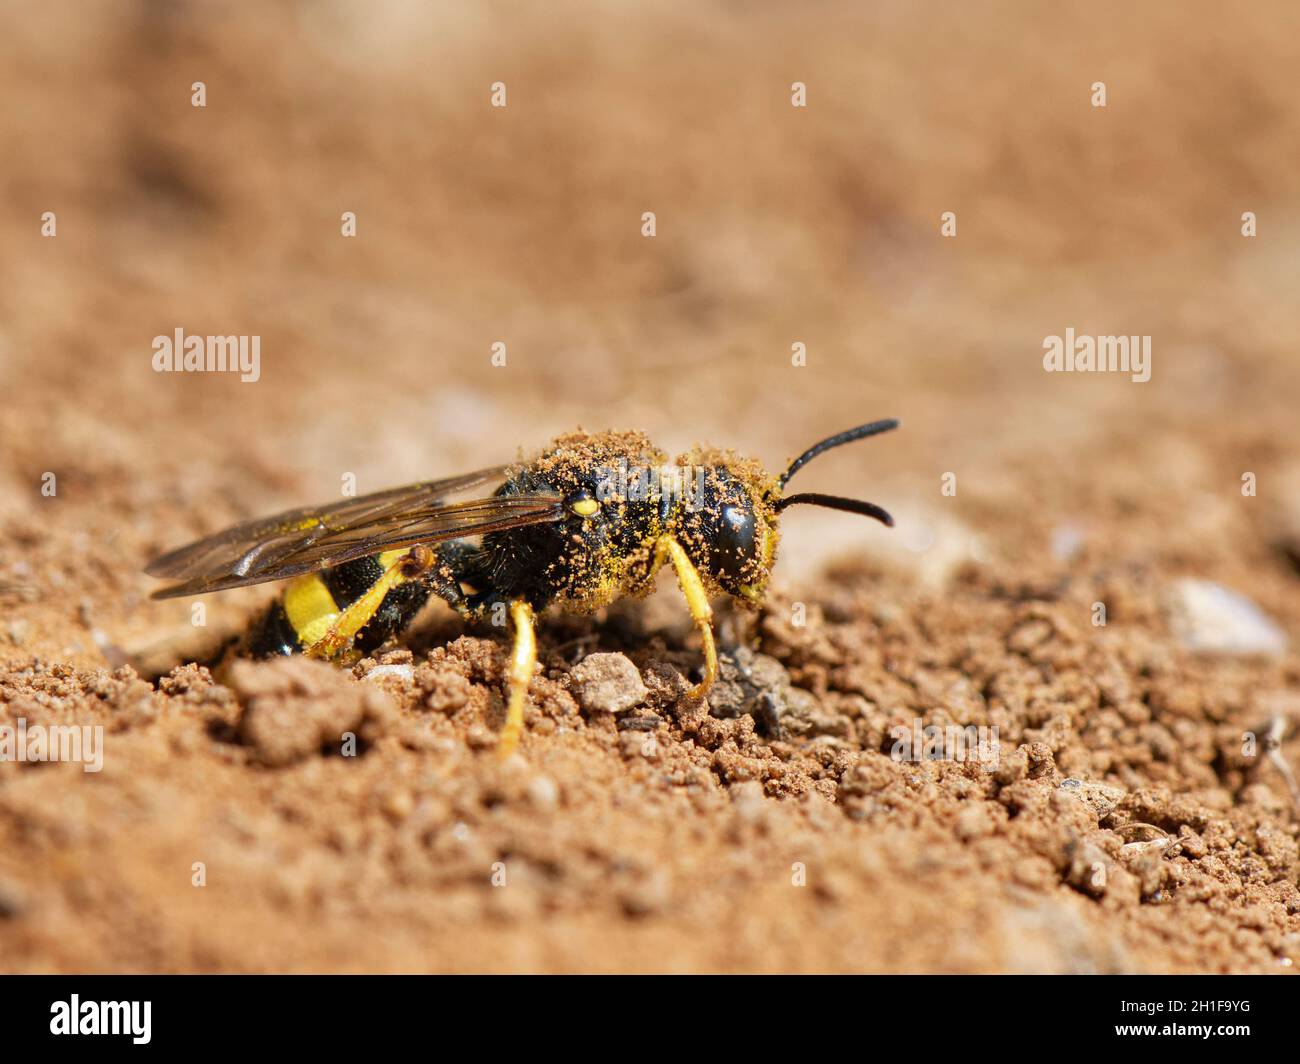 La vespa di digger dalla coda ornata (Cerceris rybyensis) che emerge dal suo burrow del nido, il gower, Glamorgan, Galles, Regno Unito. Foto Stock